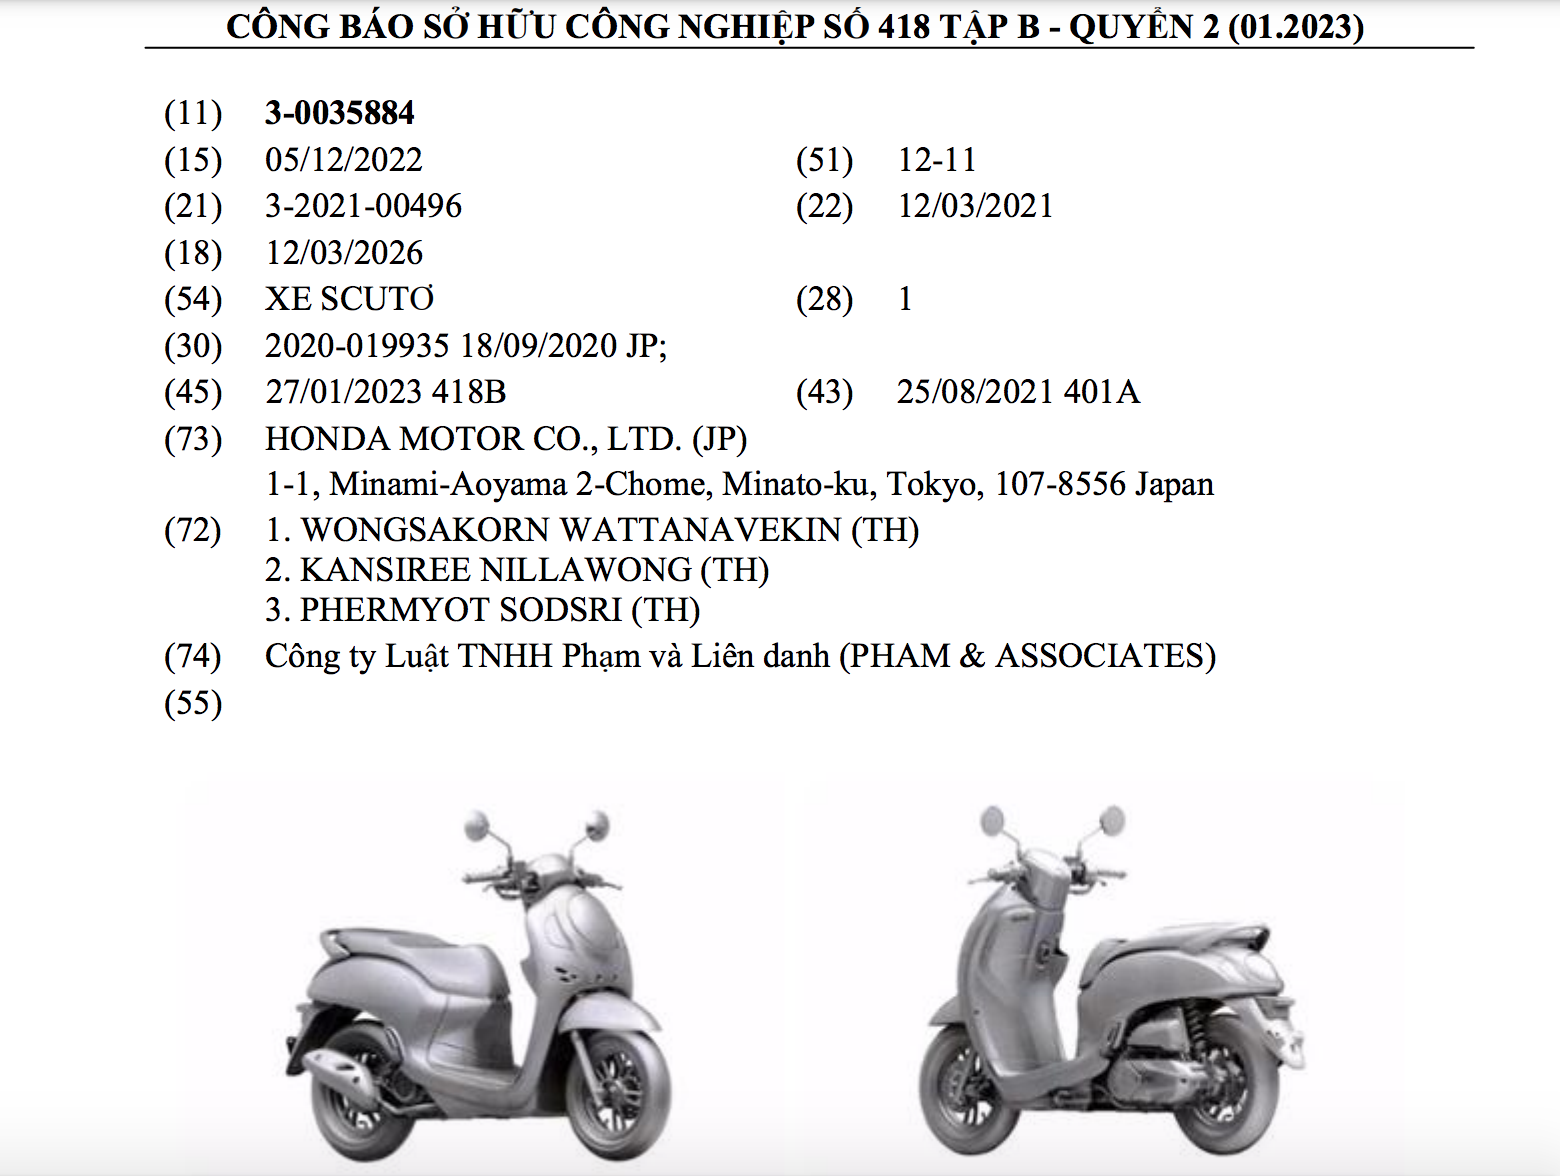 Honda đăng ký bản quyền kiểu dáng Scoopy tại Việt Nam - ảnh 1